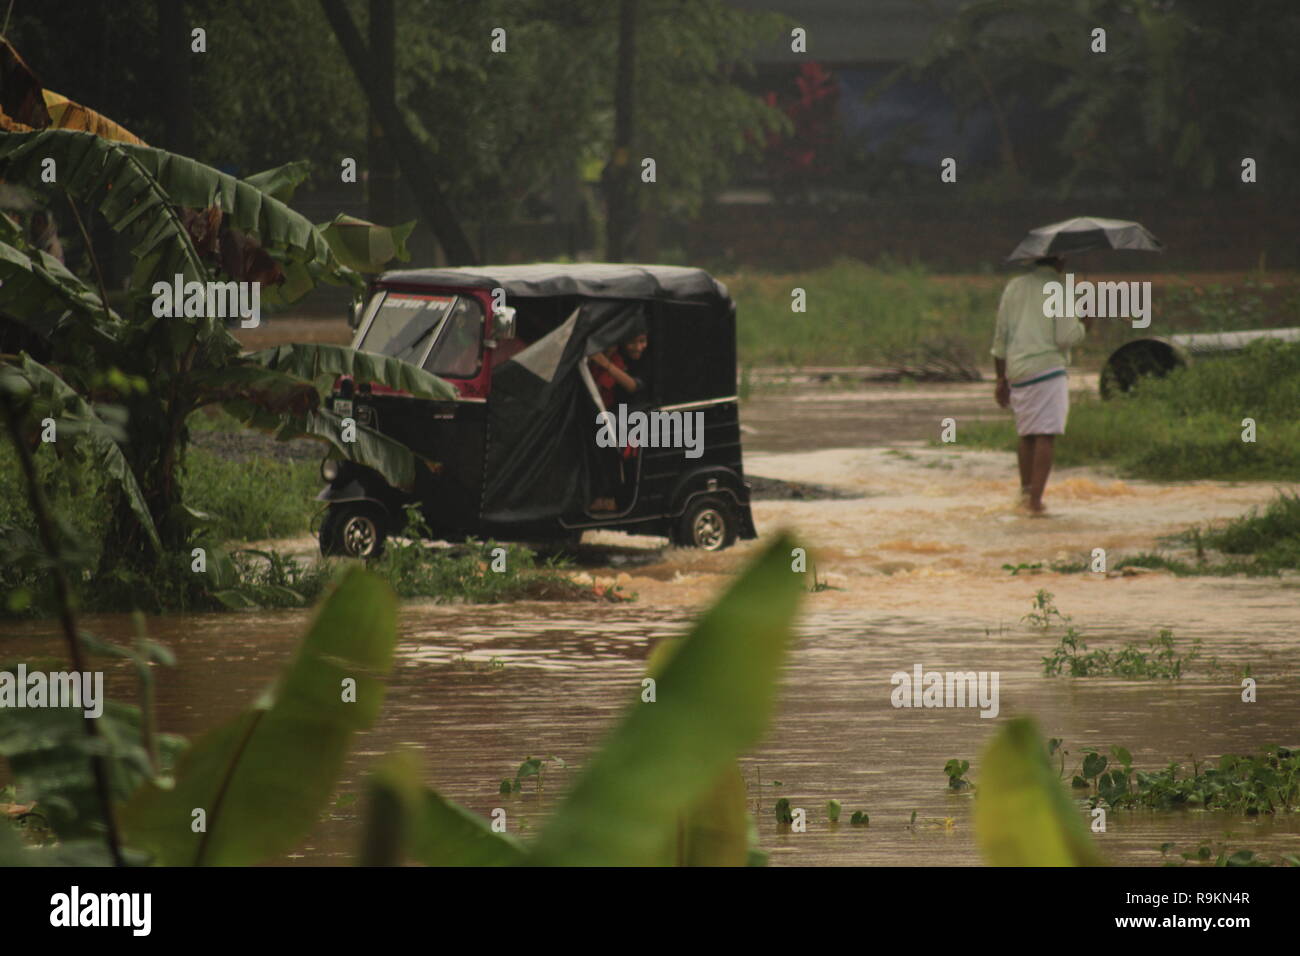 Eine Rikscha entlang fährt eine In-tank-Straße während starker Regen und Überschwemmungen in Kerala, im Jahr 2018 als Person Holding umbrella Spaziergänge durch. Stockfoto